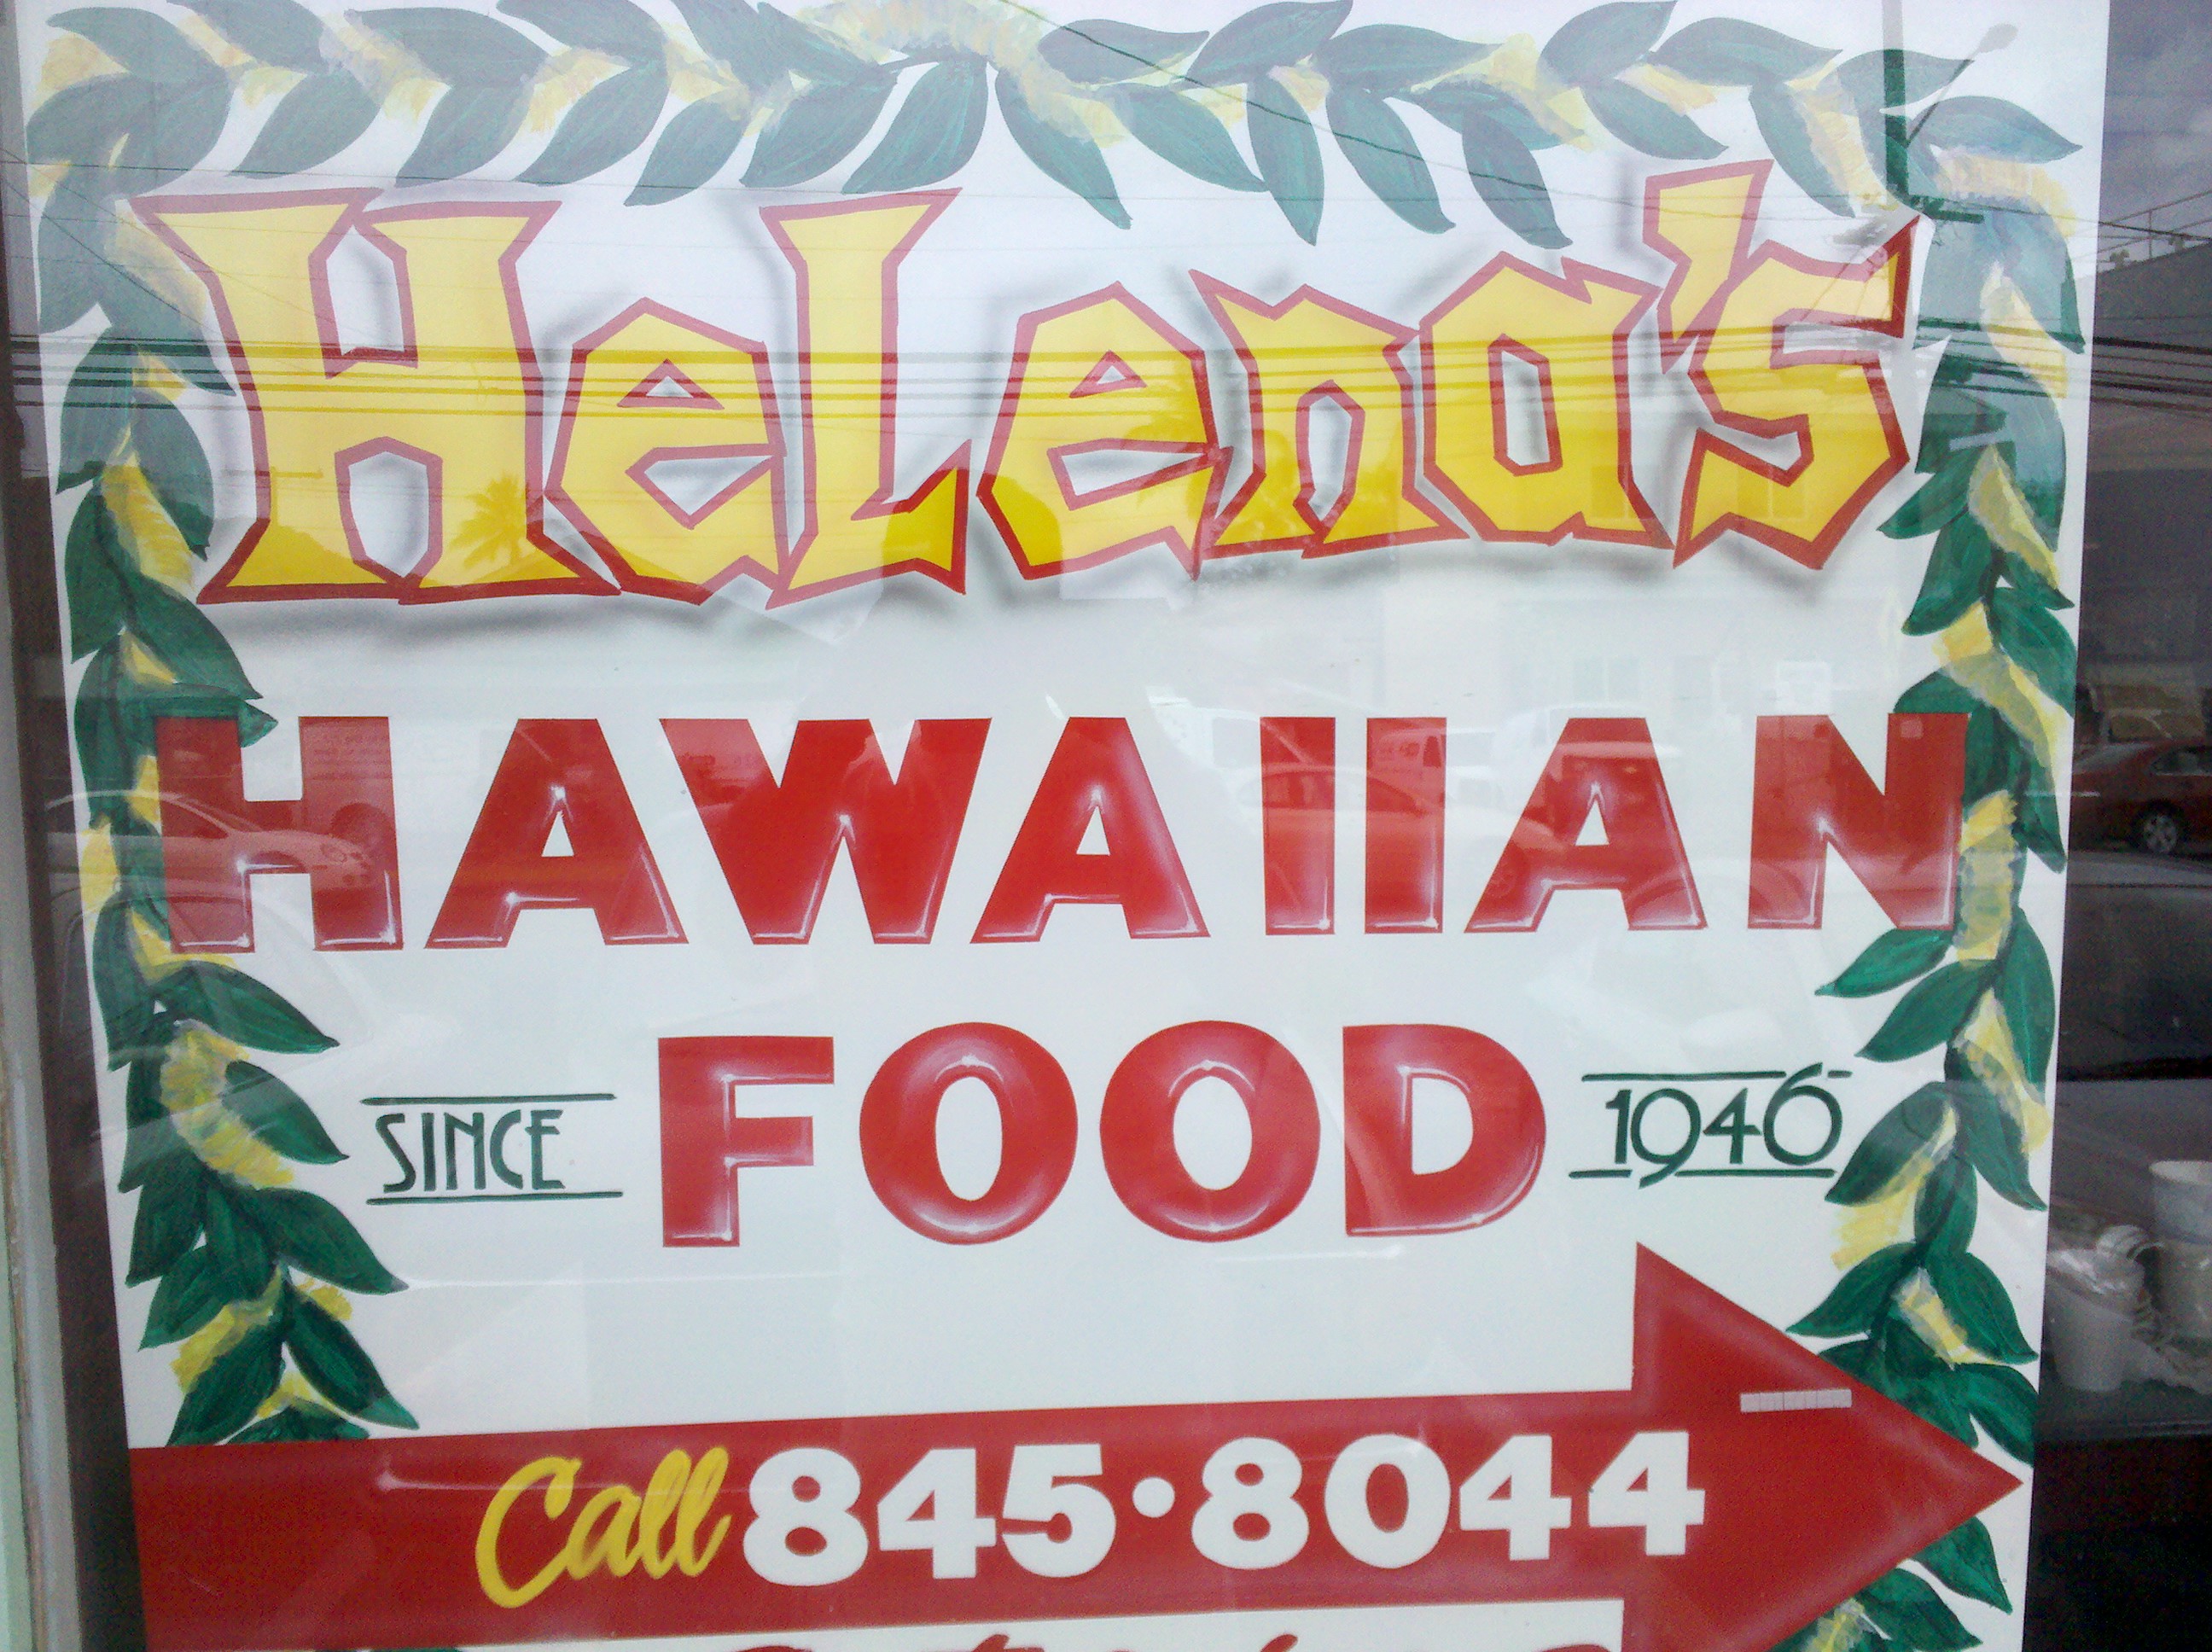 Helena's Hawaiian Food>